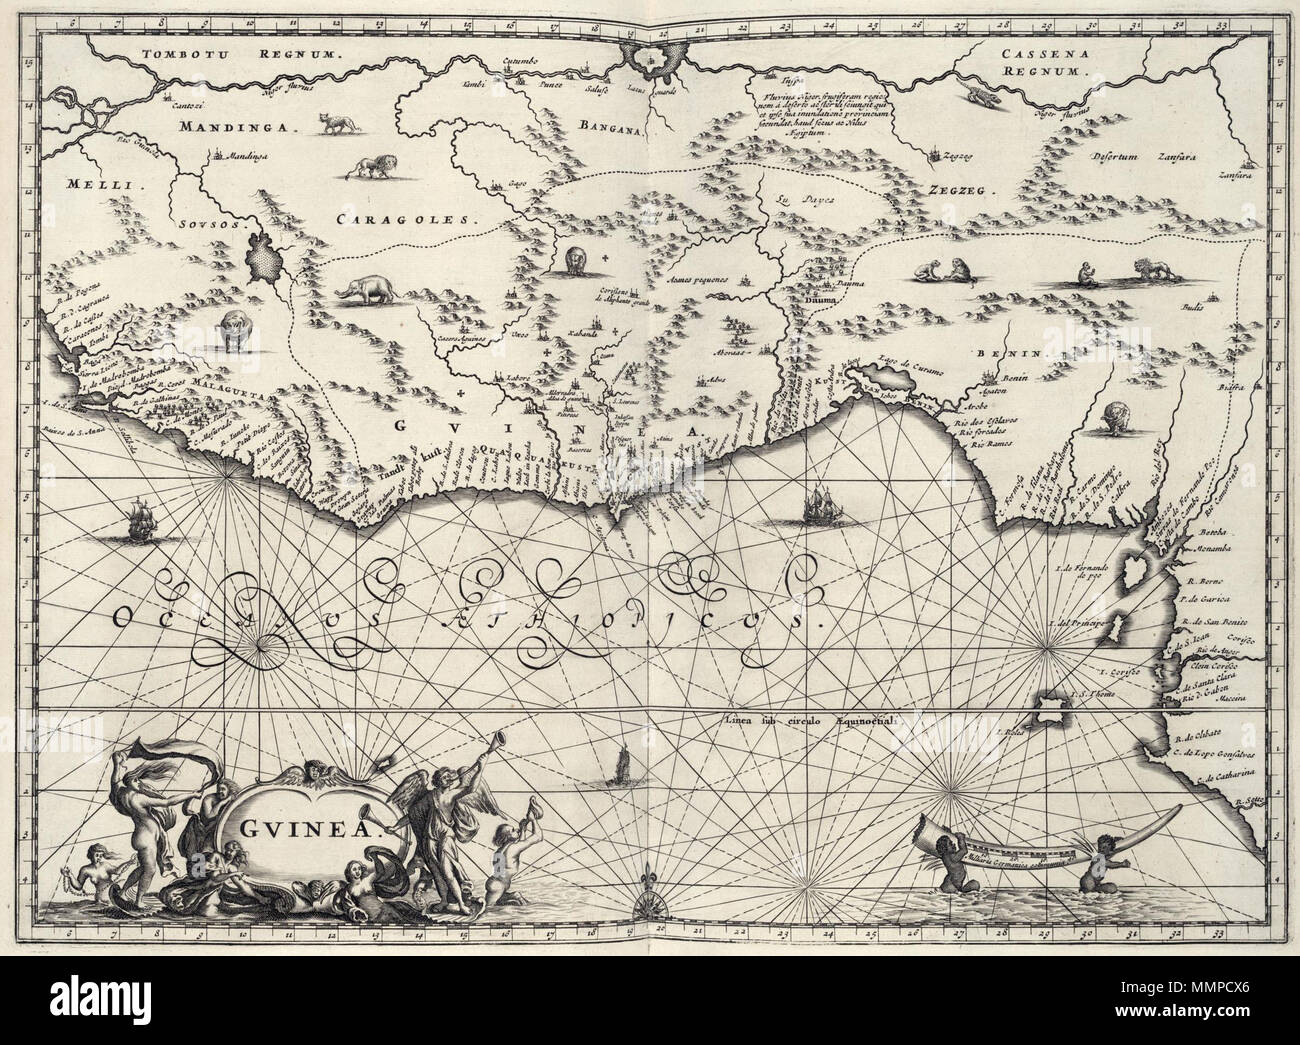 wetgeving Rand rand Nederlands: Kaart van Guinea. Gvinea. Dr. Olfert Dapper (1636-1689)  publiceerde na 1663 een groot aantal boeken. Hij schreef een geschiedenis  van de stad Amsterdam en verzorgde de eerste Nederlandse vertaling van